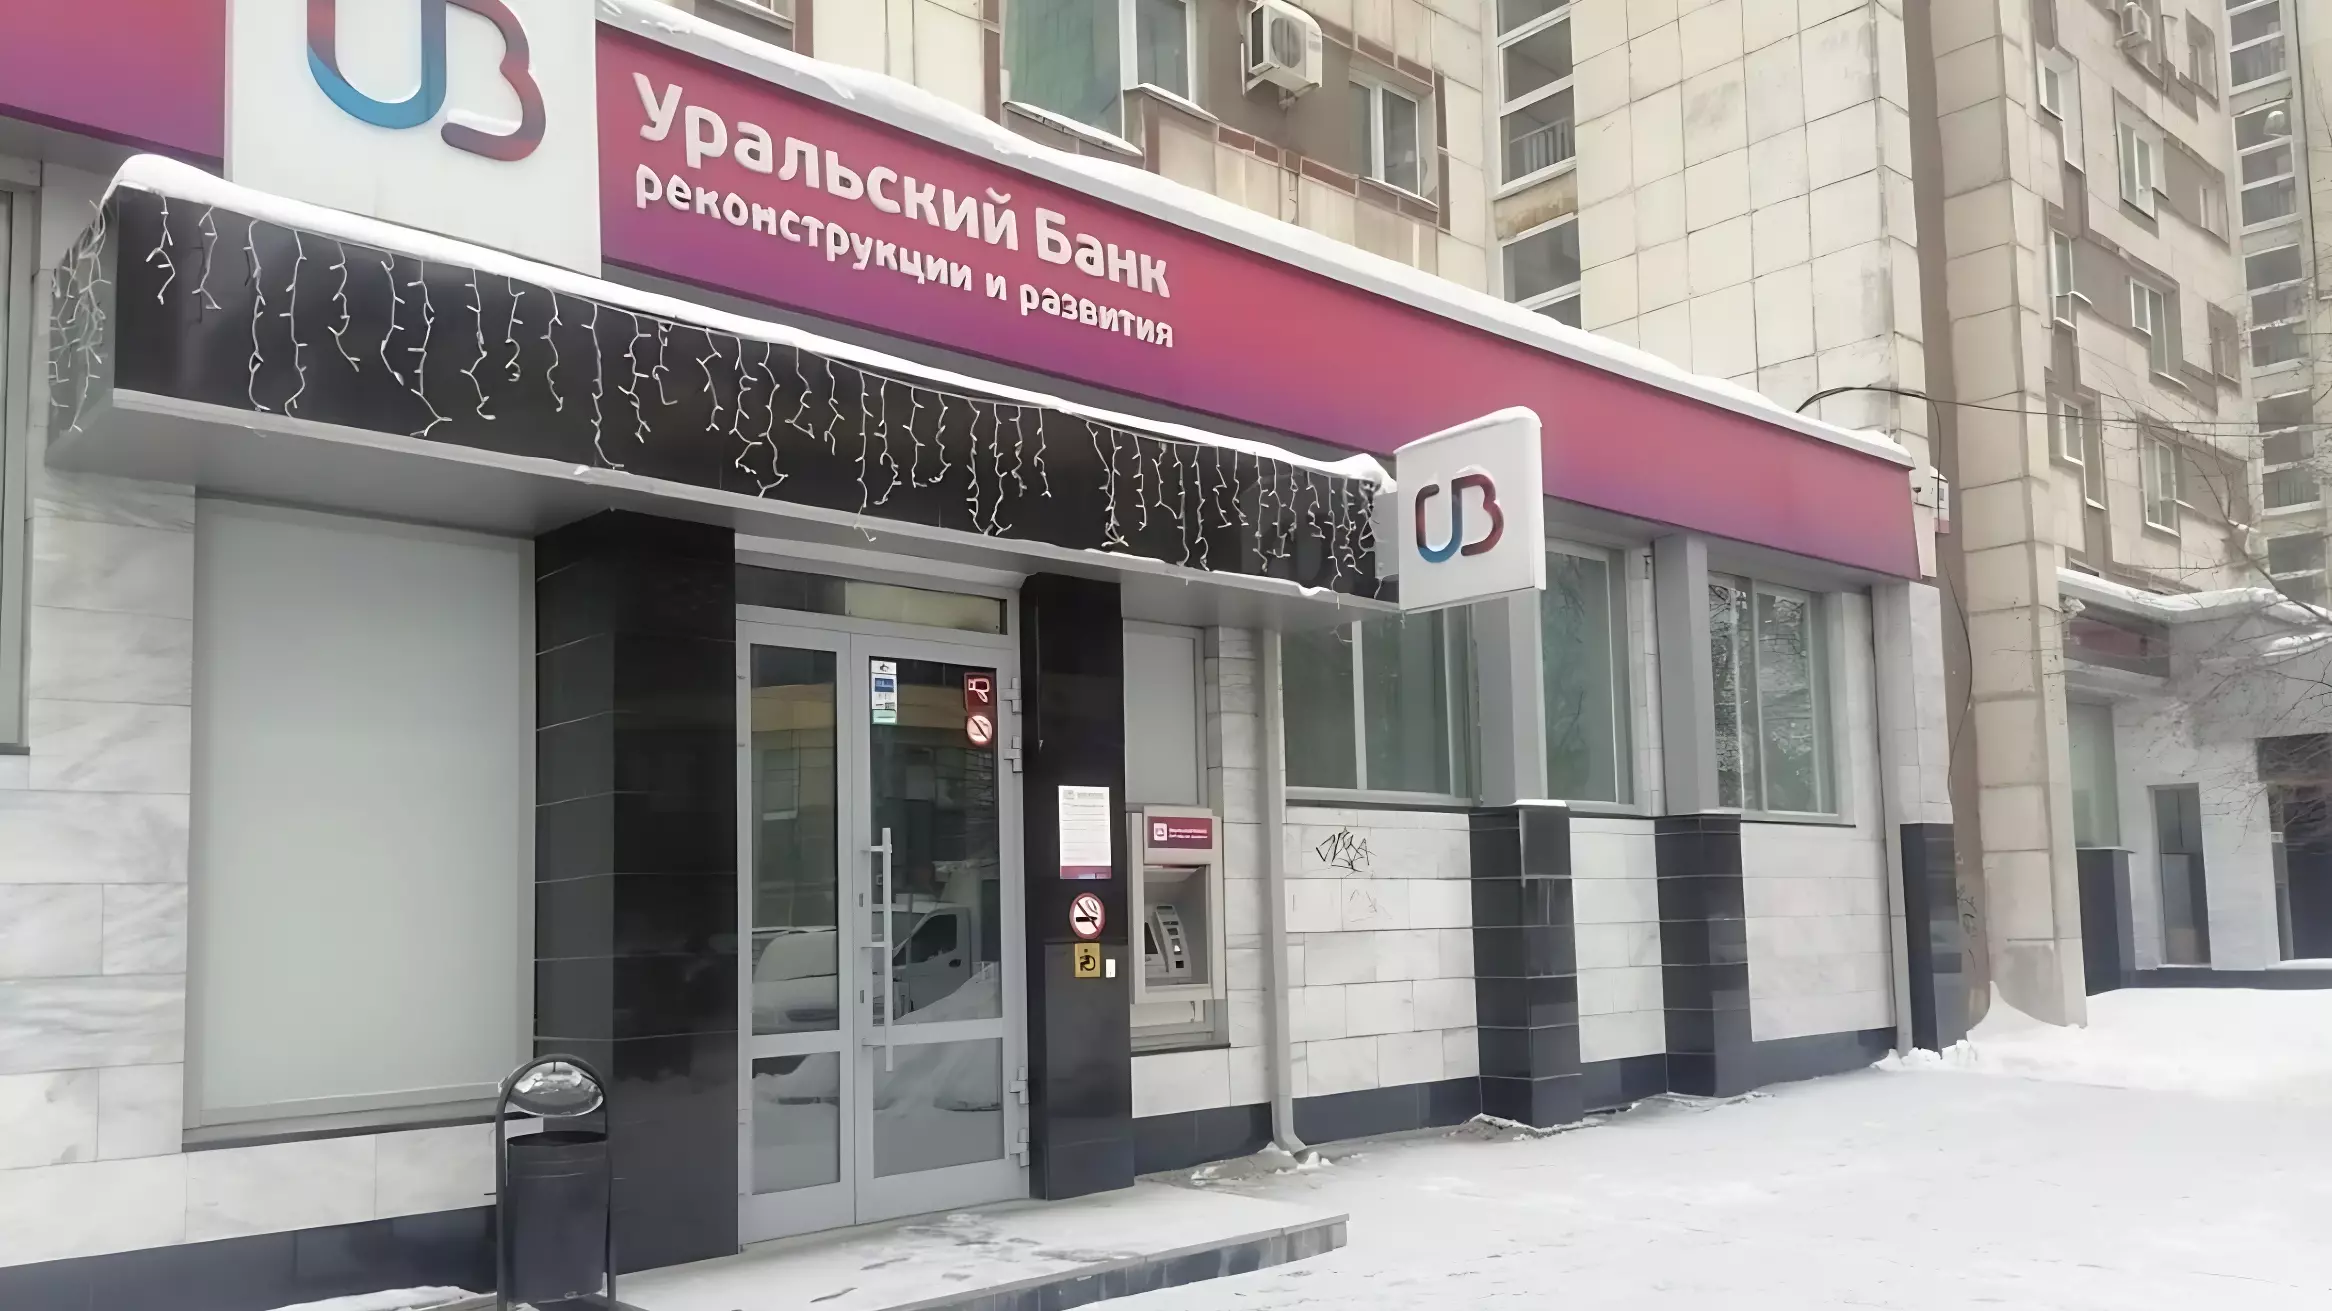 Офис банка выставили на продажу в центре Екатеринбурга